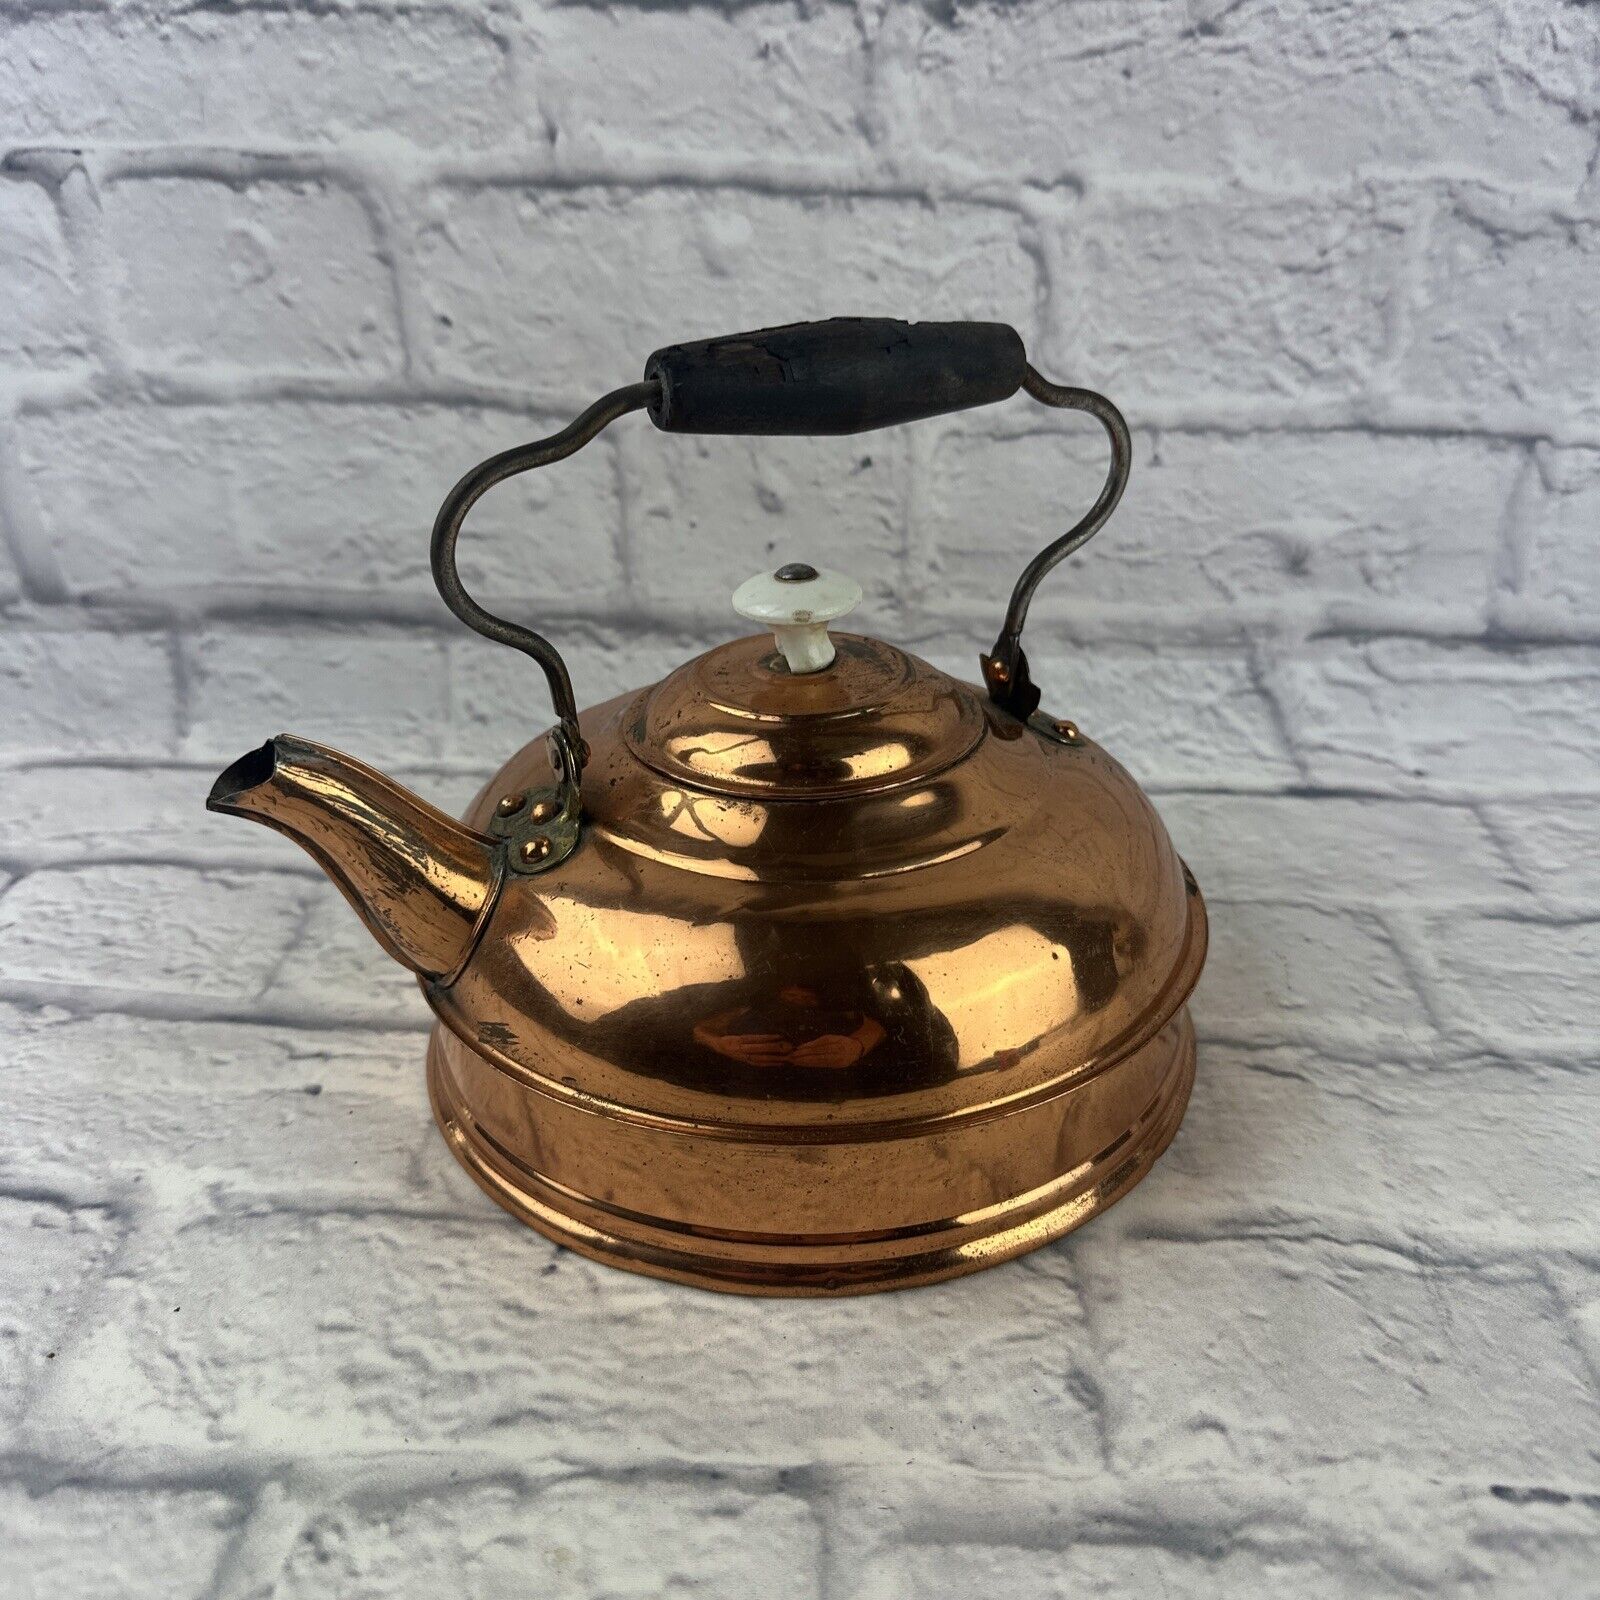 Vintage Rome Copper Tea Pot. Please Read Description For More Details